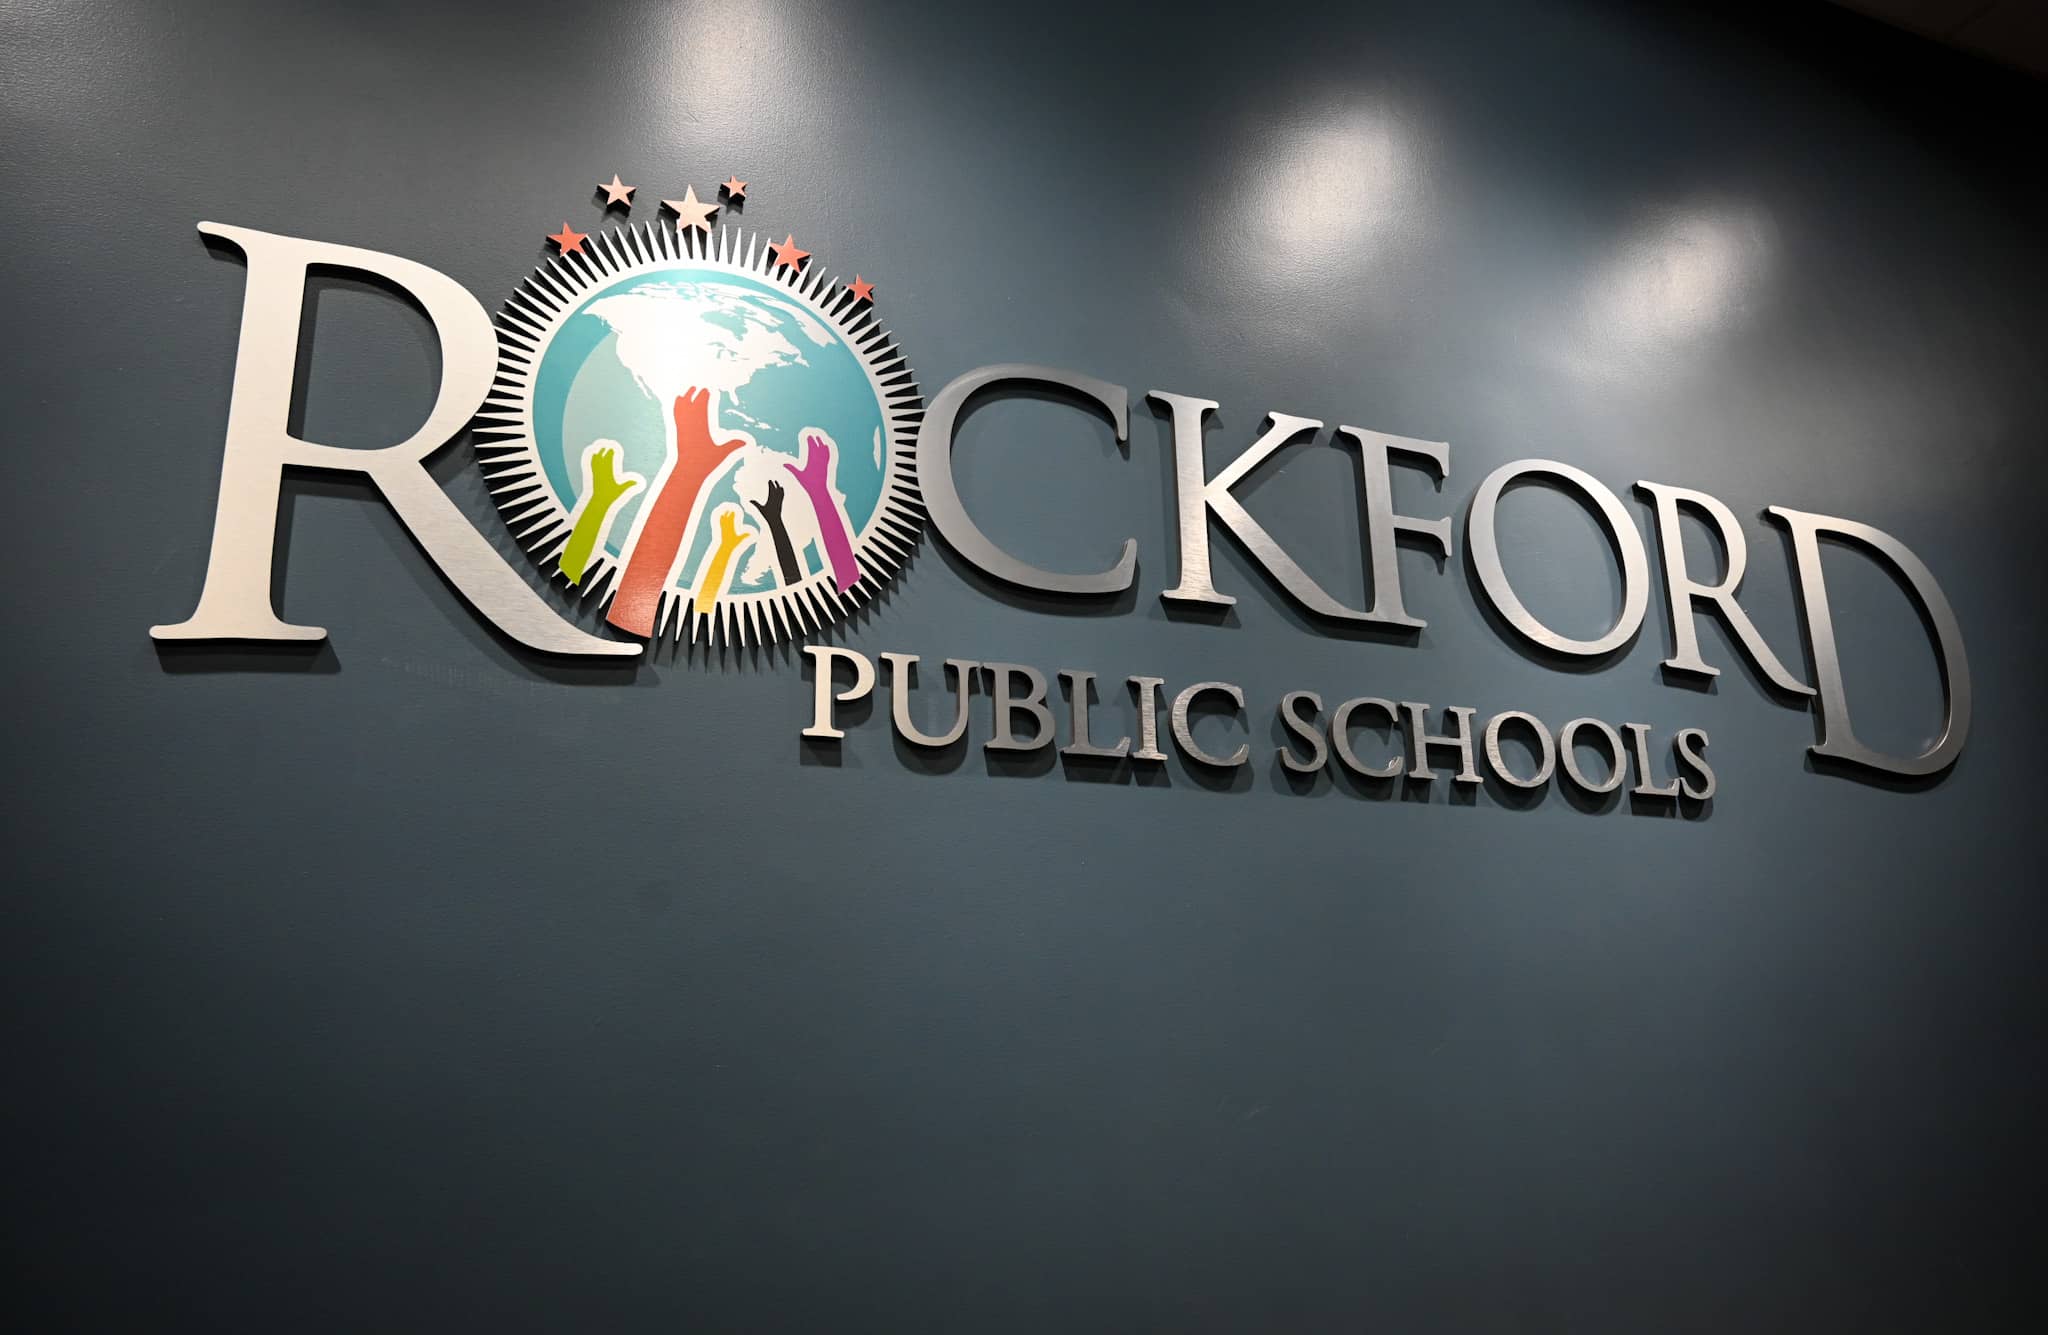 Rockford Public Schools